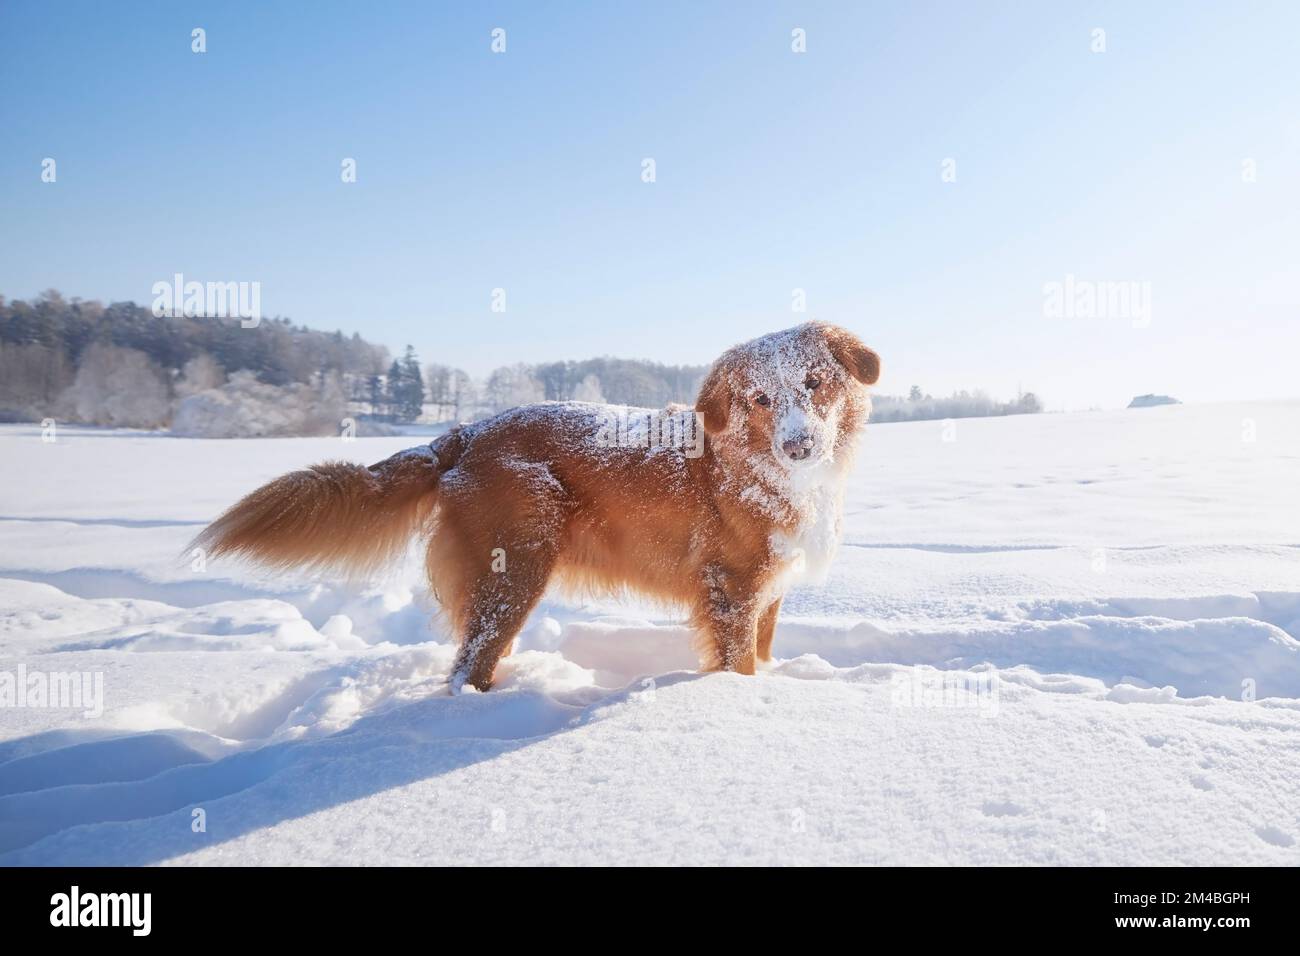 Joyeux chien pendant la marche hivernale dans la neige profonde. Retriever de canard de la Nouvelle-Écosse dans un paysage enneigé. Banque D'Images